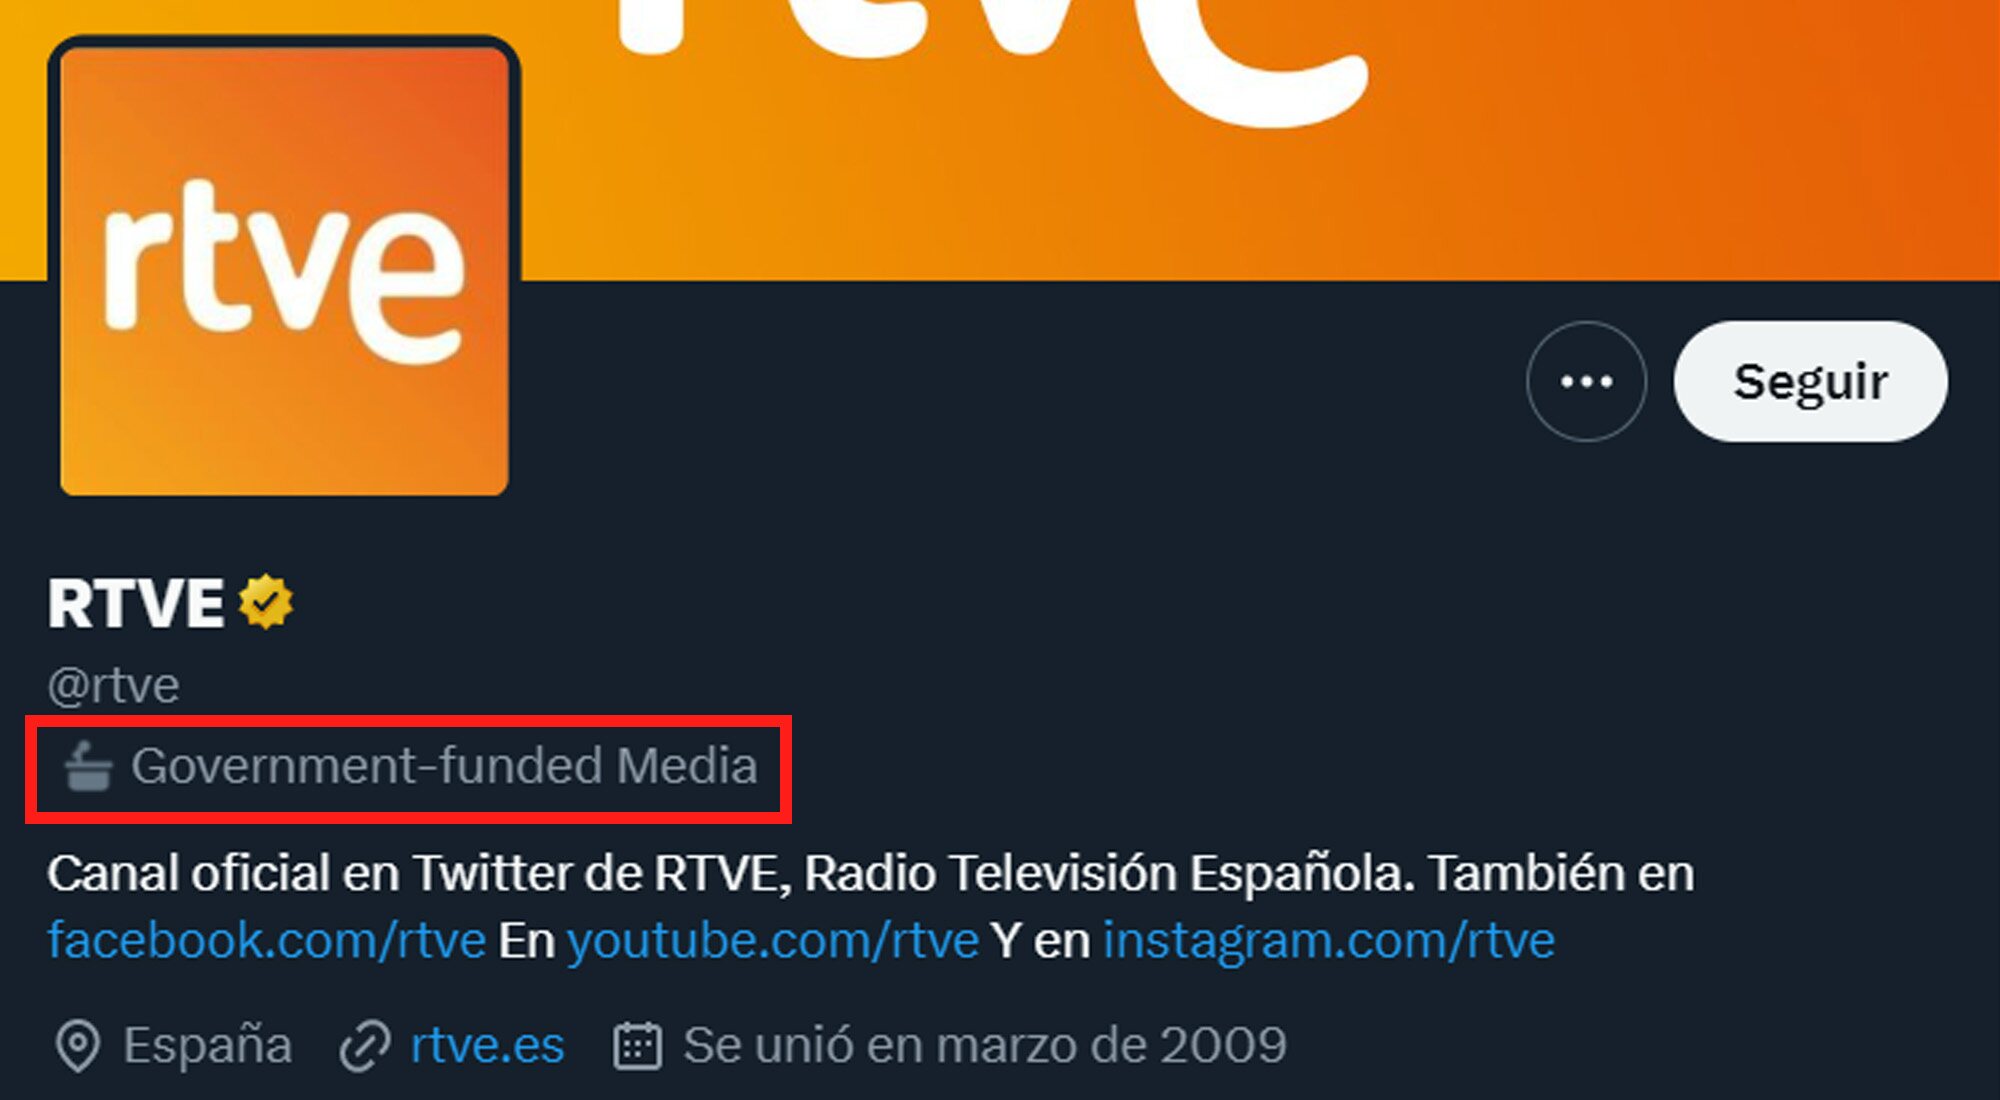 La cuenta de RTVE en Twitter, identificada con la etiqueta "Medio financiado por el Gobierno"